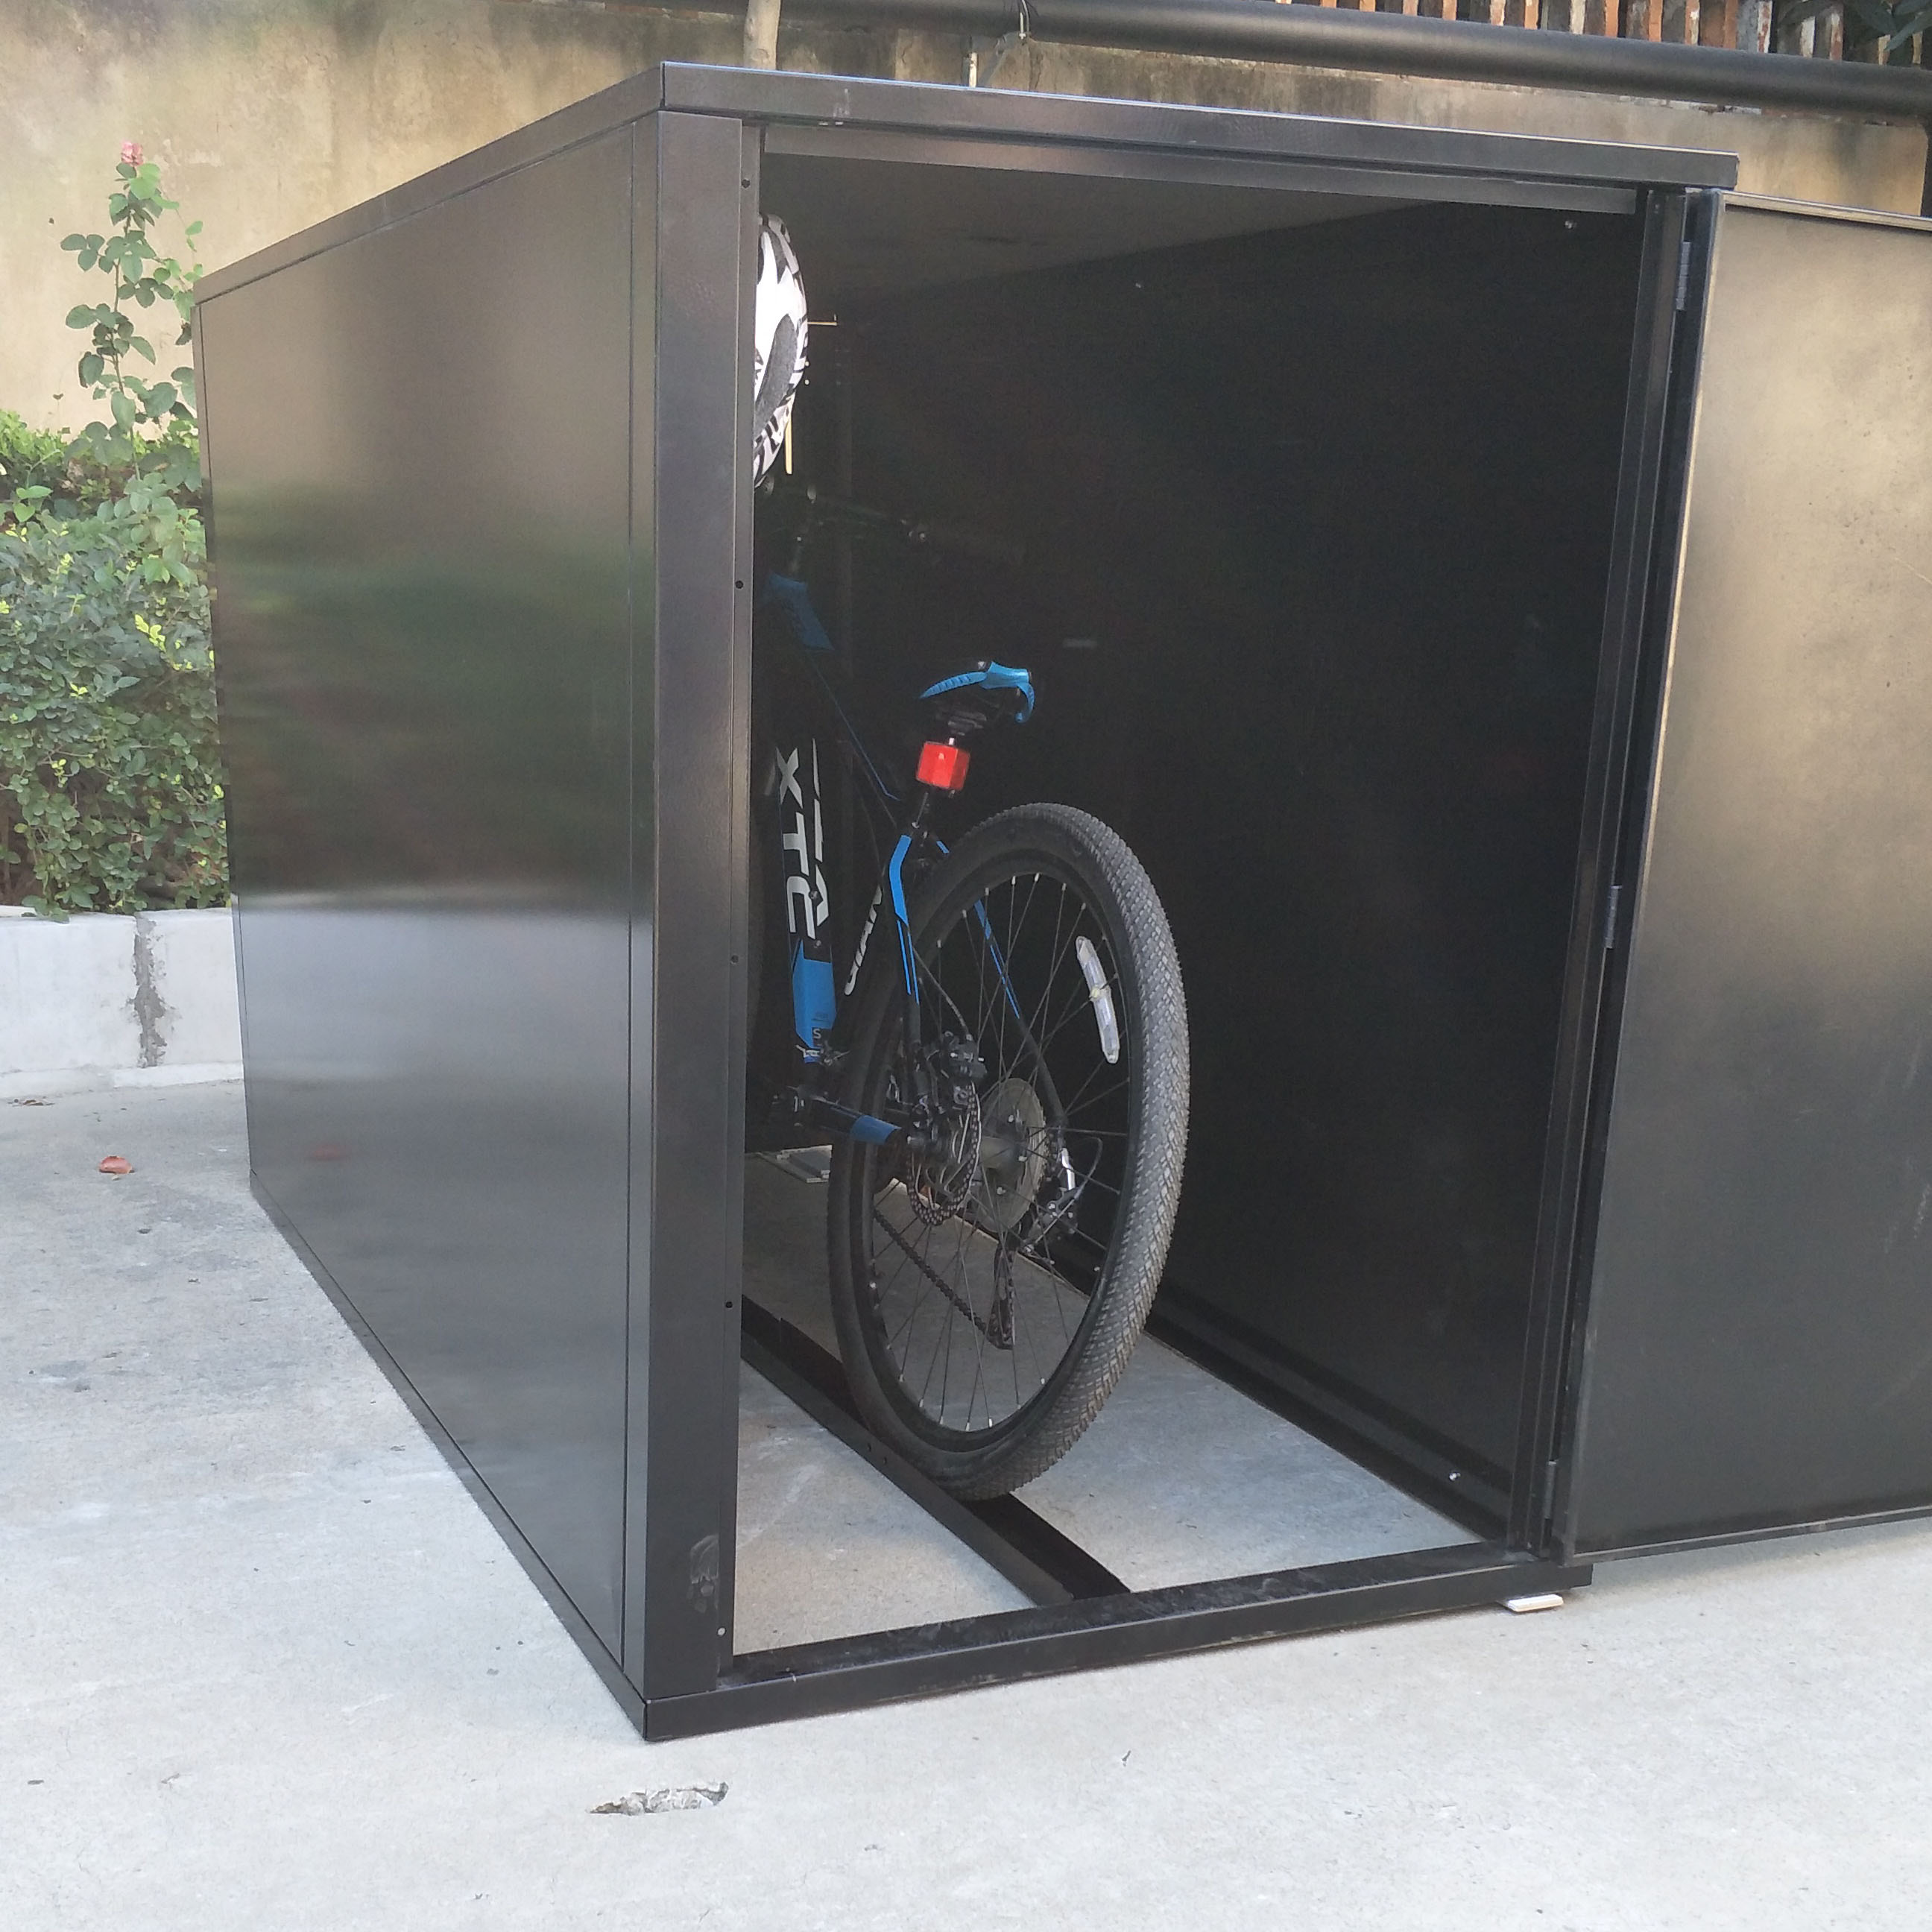 Casillero seguro para guardar bicicletas públicas o personales al aire libre